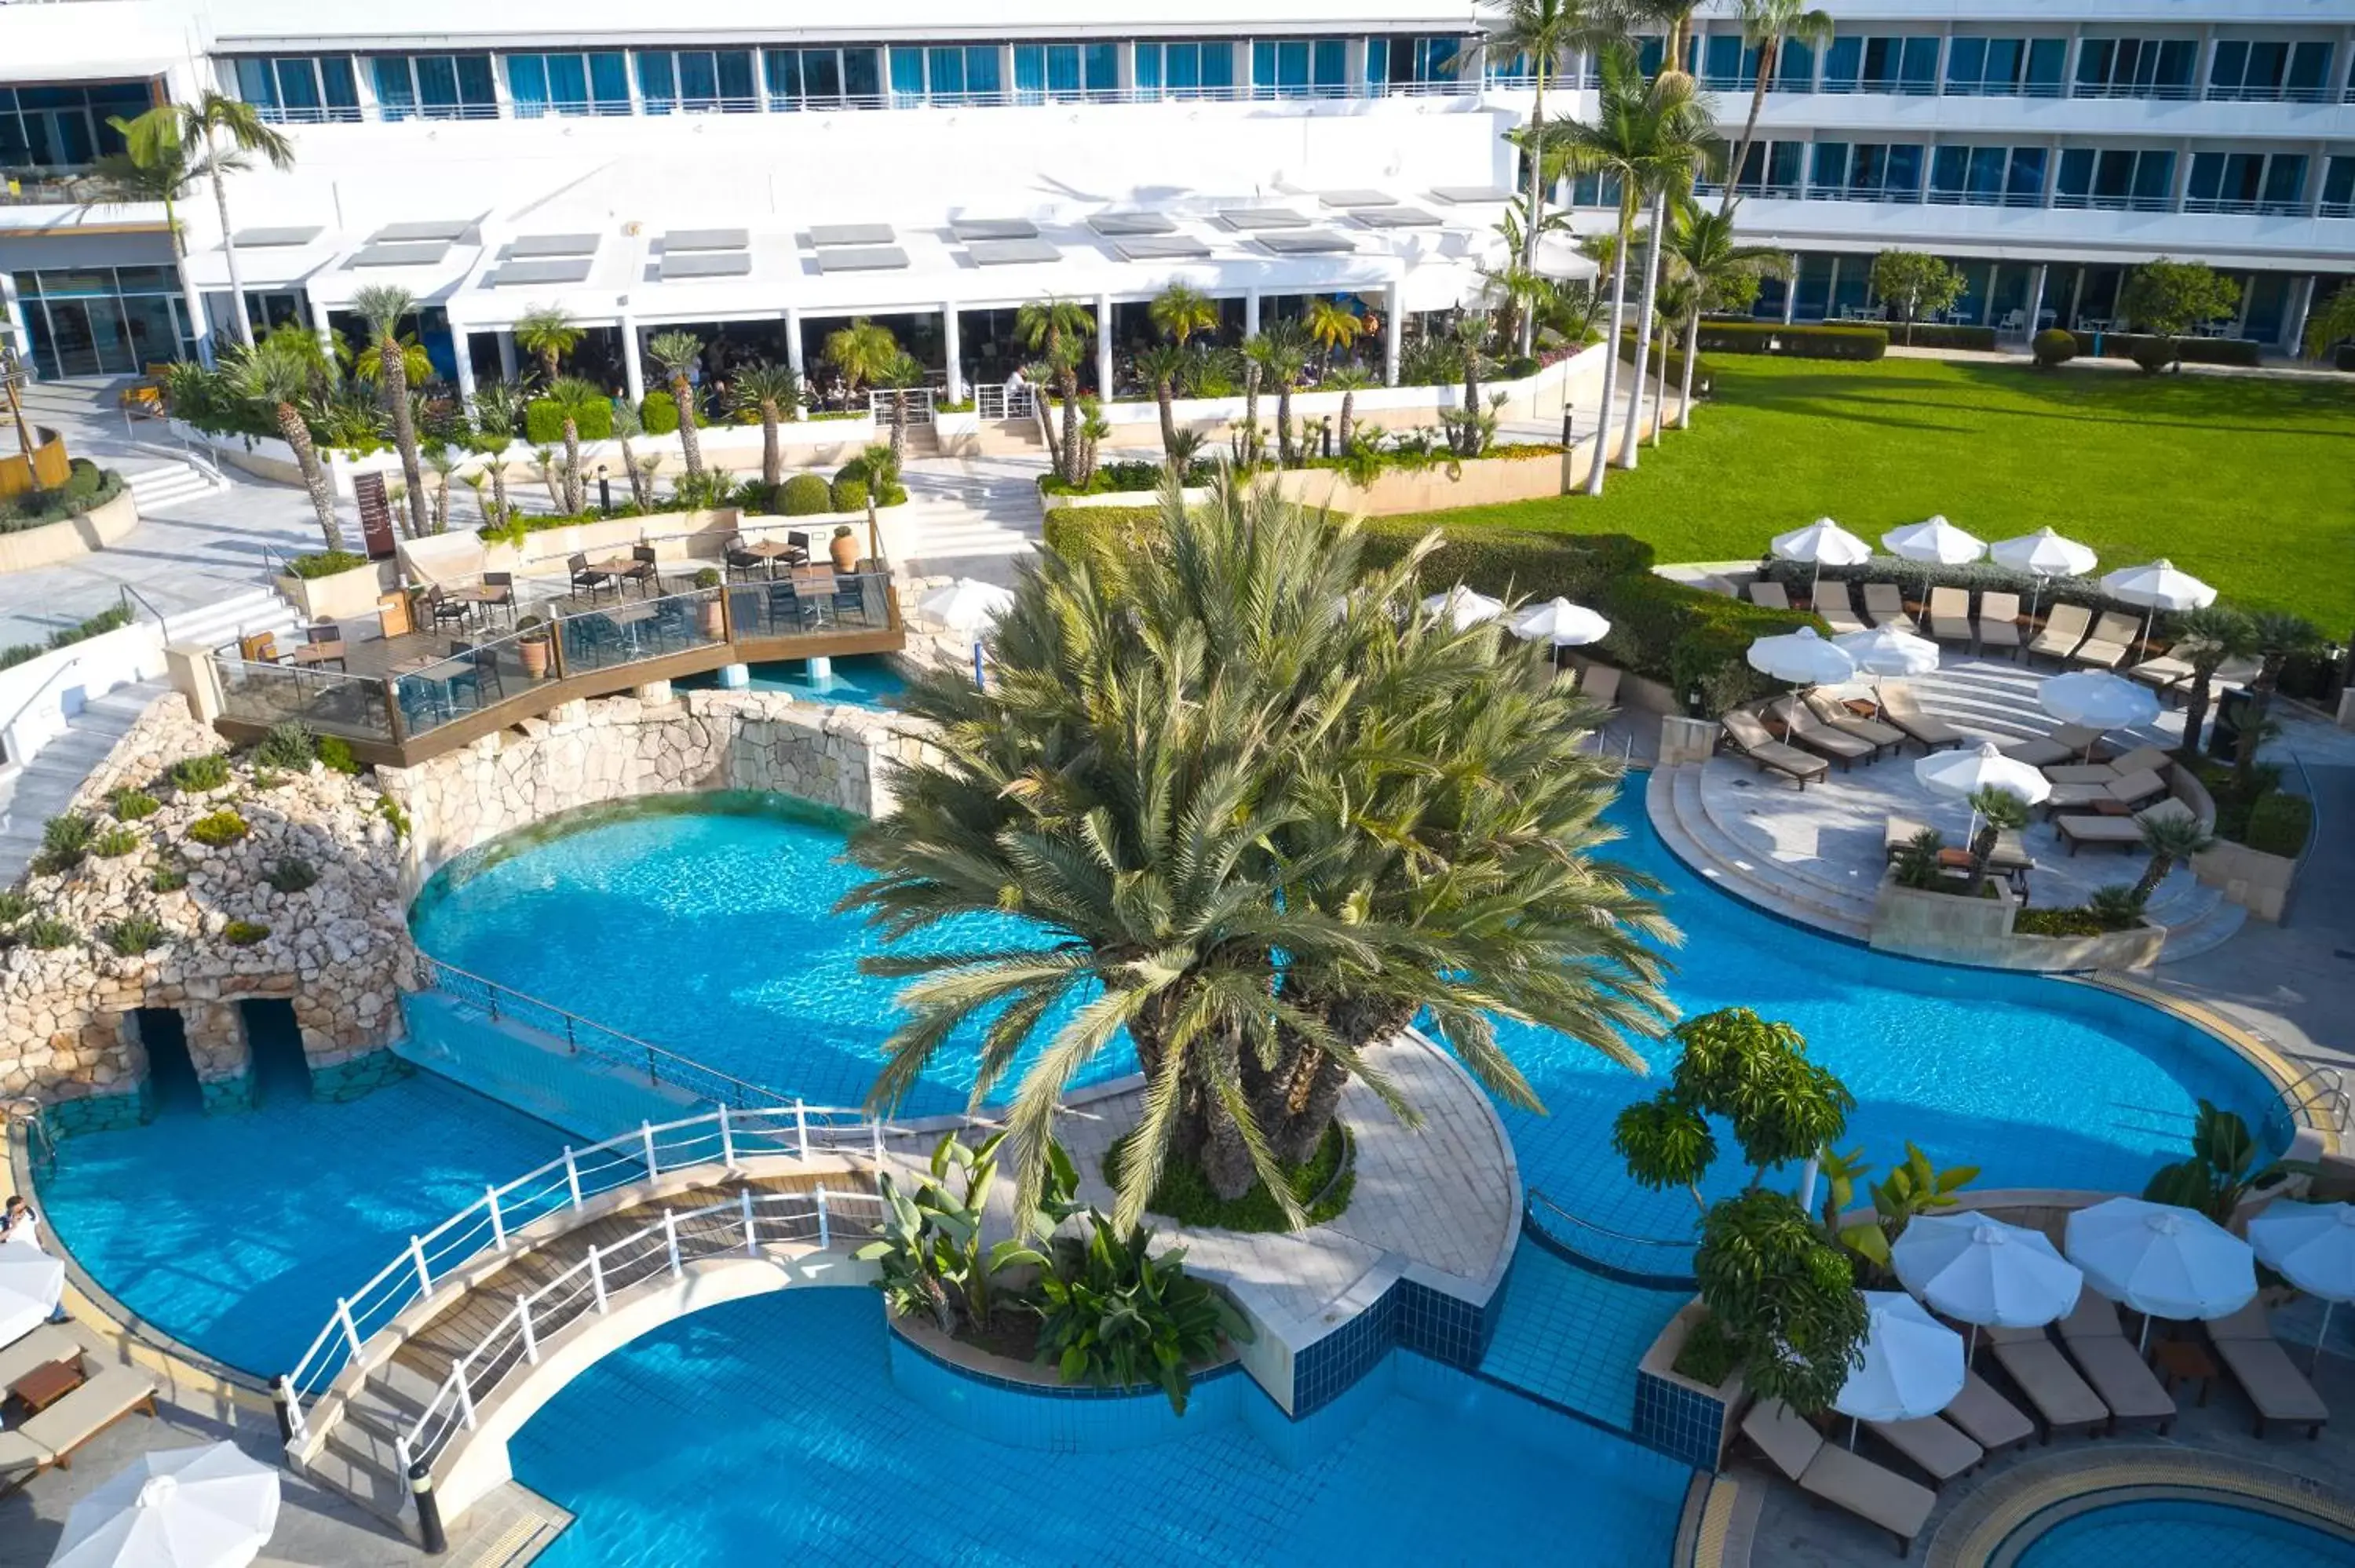 Garden view, Pool View in Mediterranean Beach Hotel